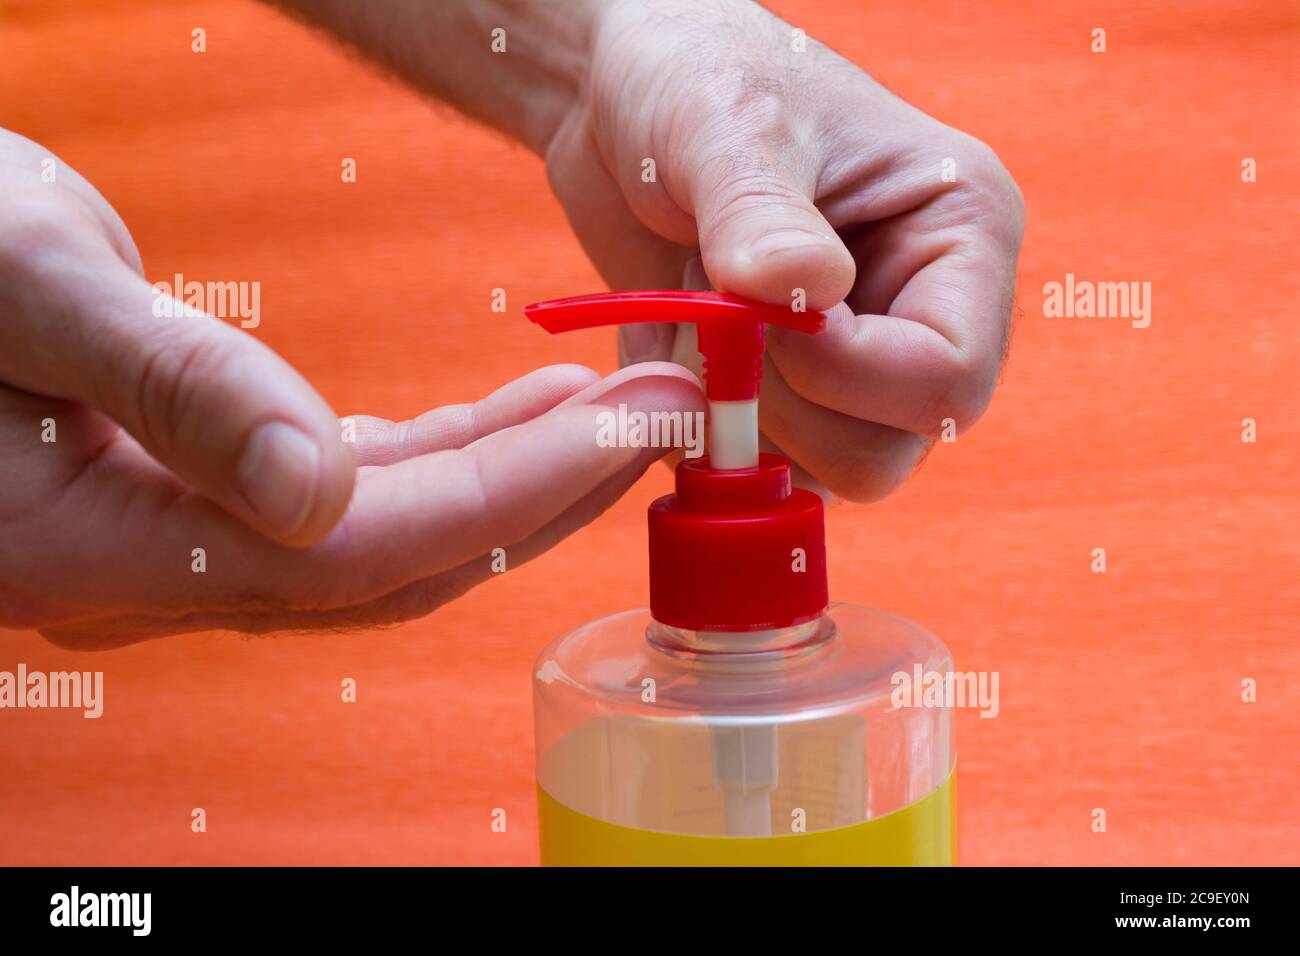 Mani da uomo con dispenser di sapone liquido, antisettici a base di alcol - lavaggio delle mani, igiene, protezione contro l'influenza durante la quarantena, coronavir Foto Stock